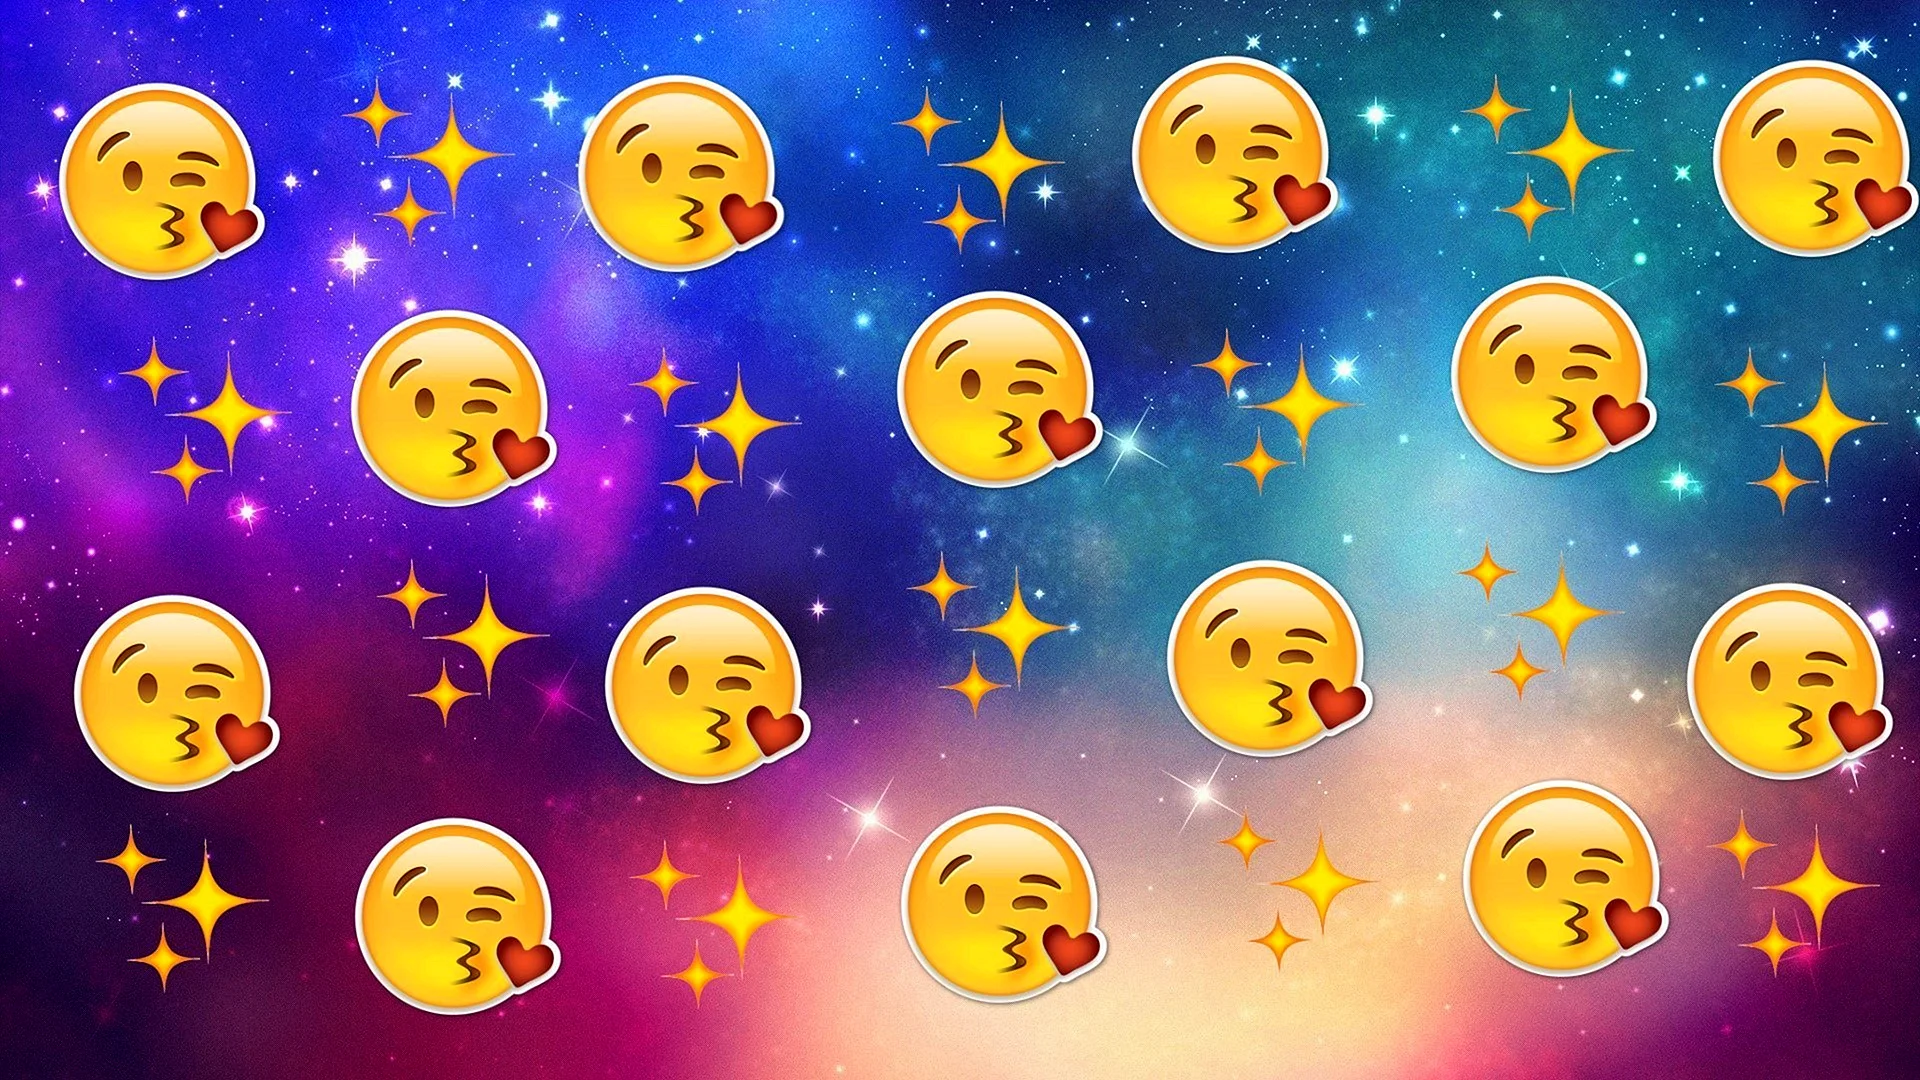 Emojis Background Wallpaper